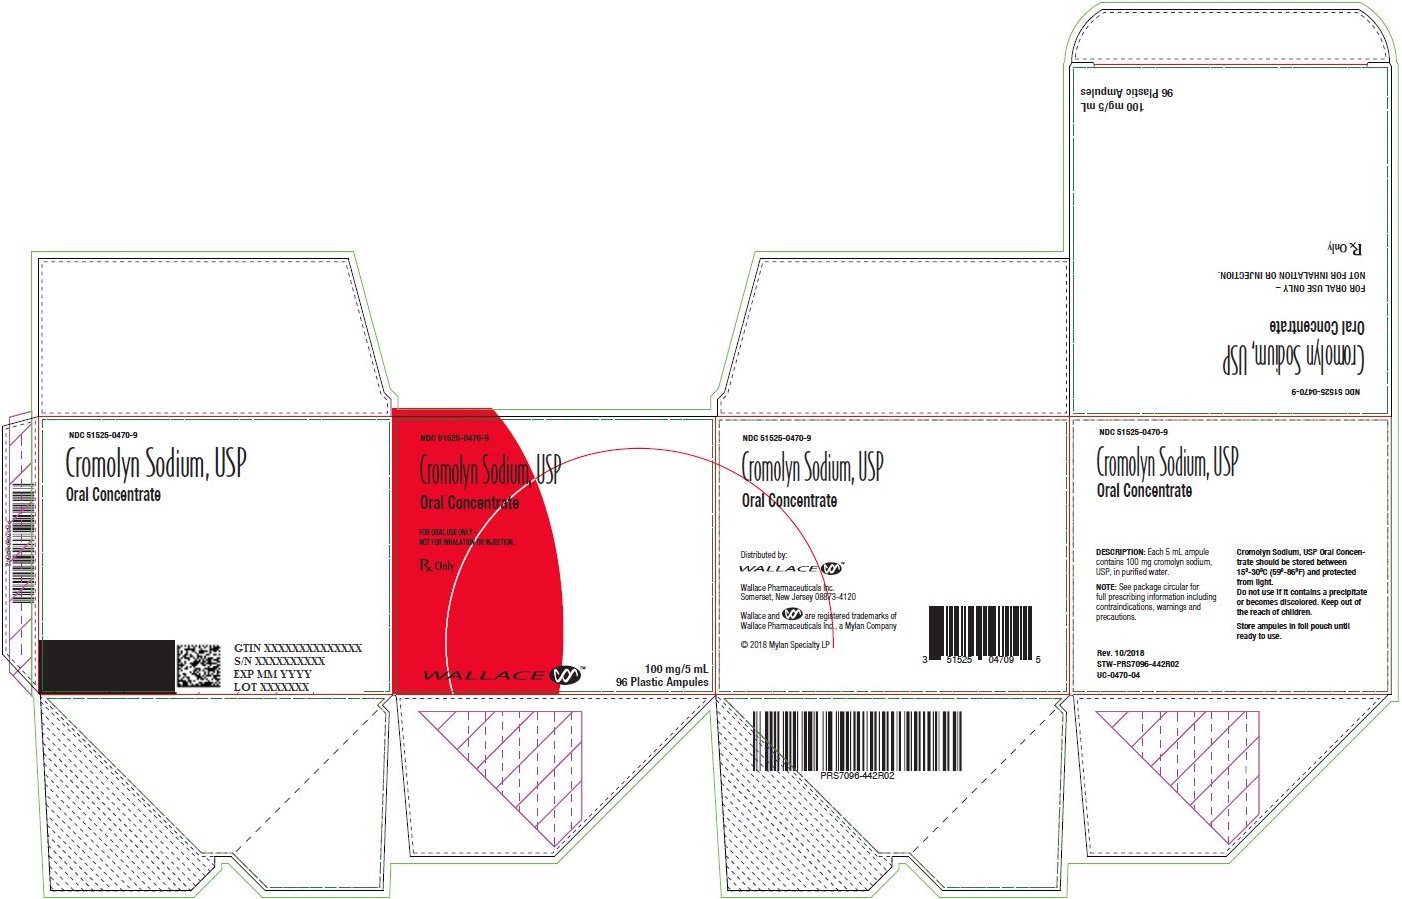 Cromolyn Sodium, USP Oral Concentrate Carton Label